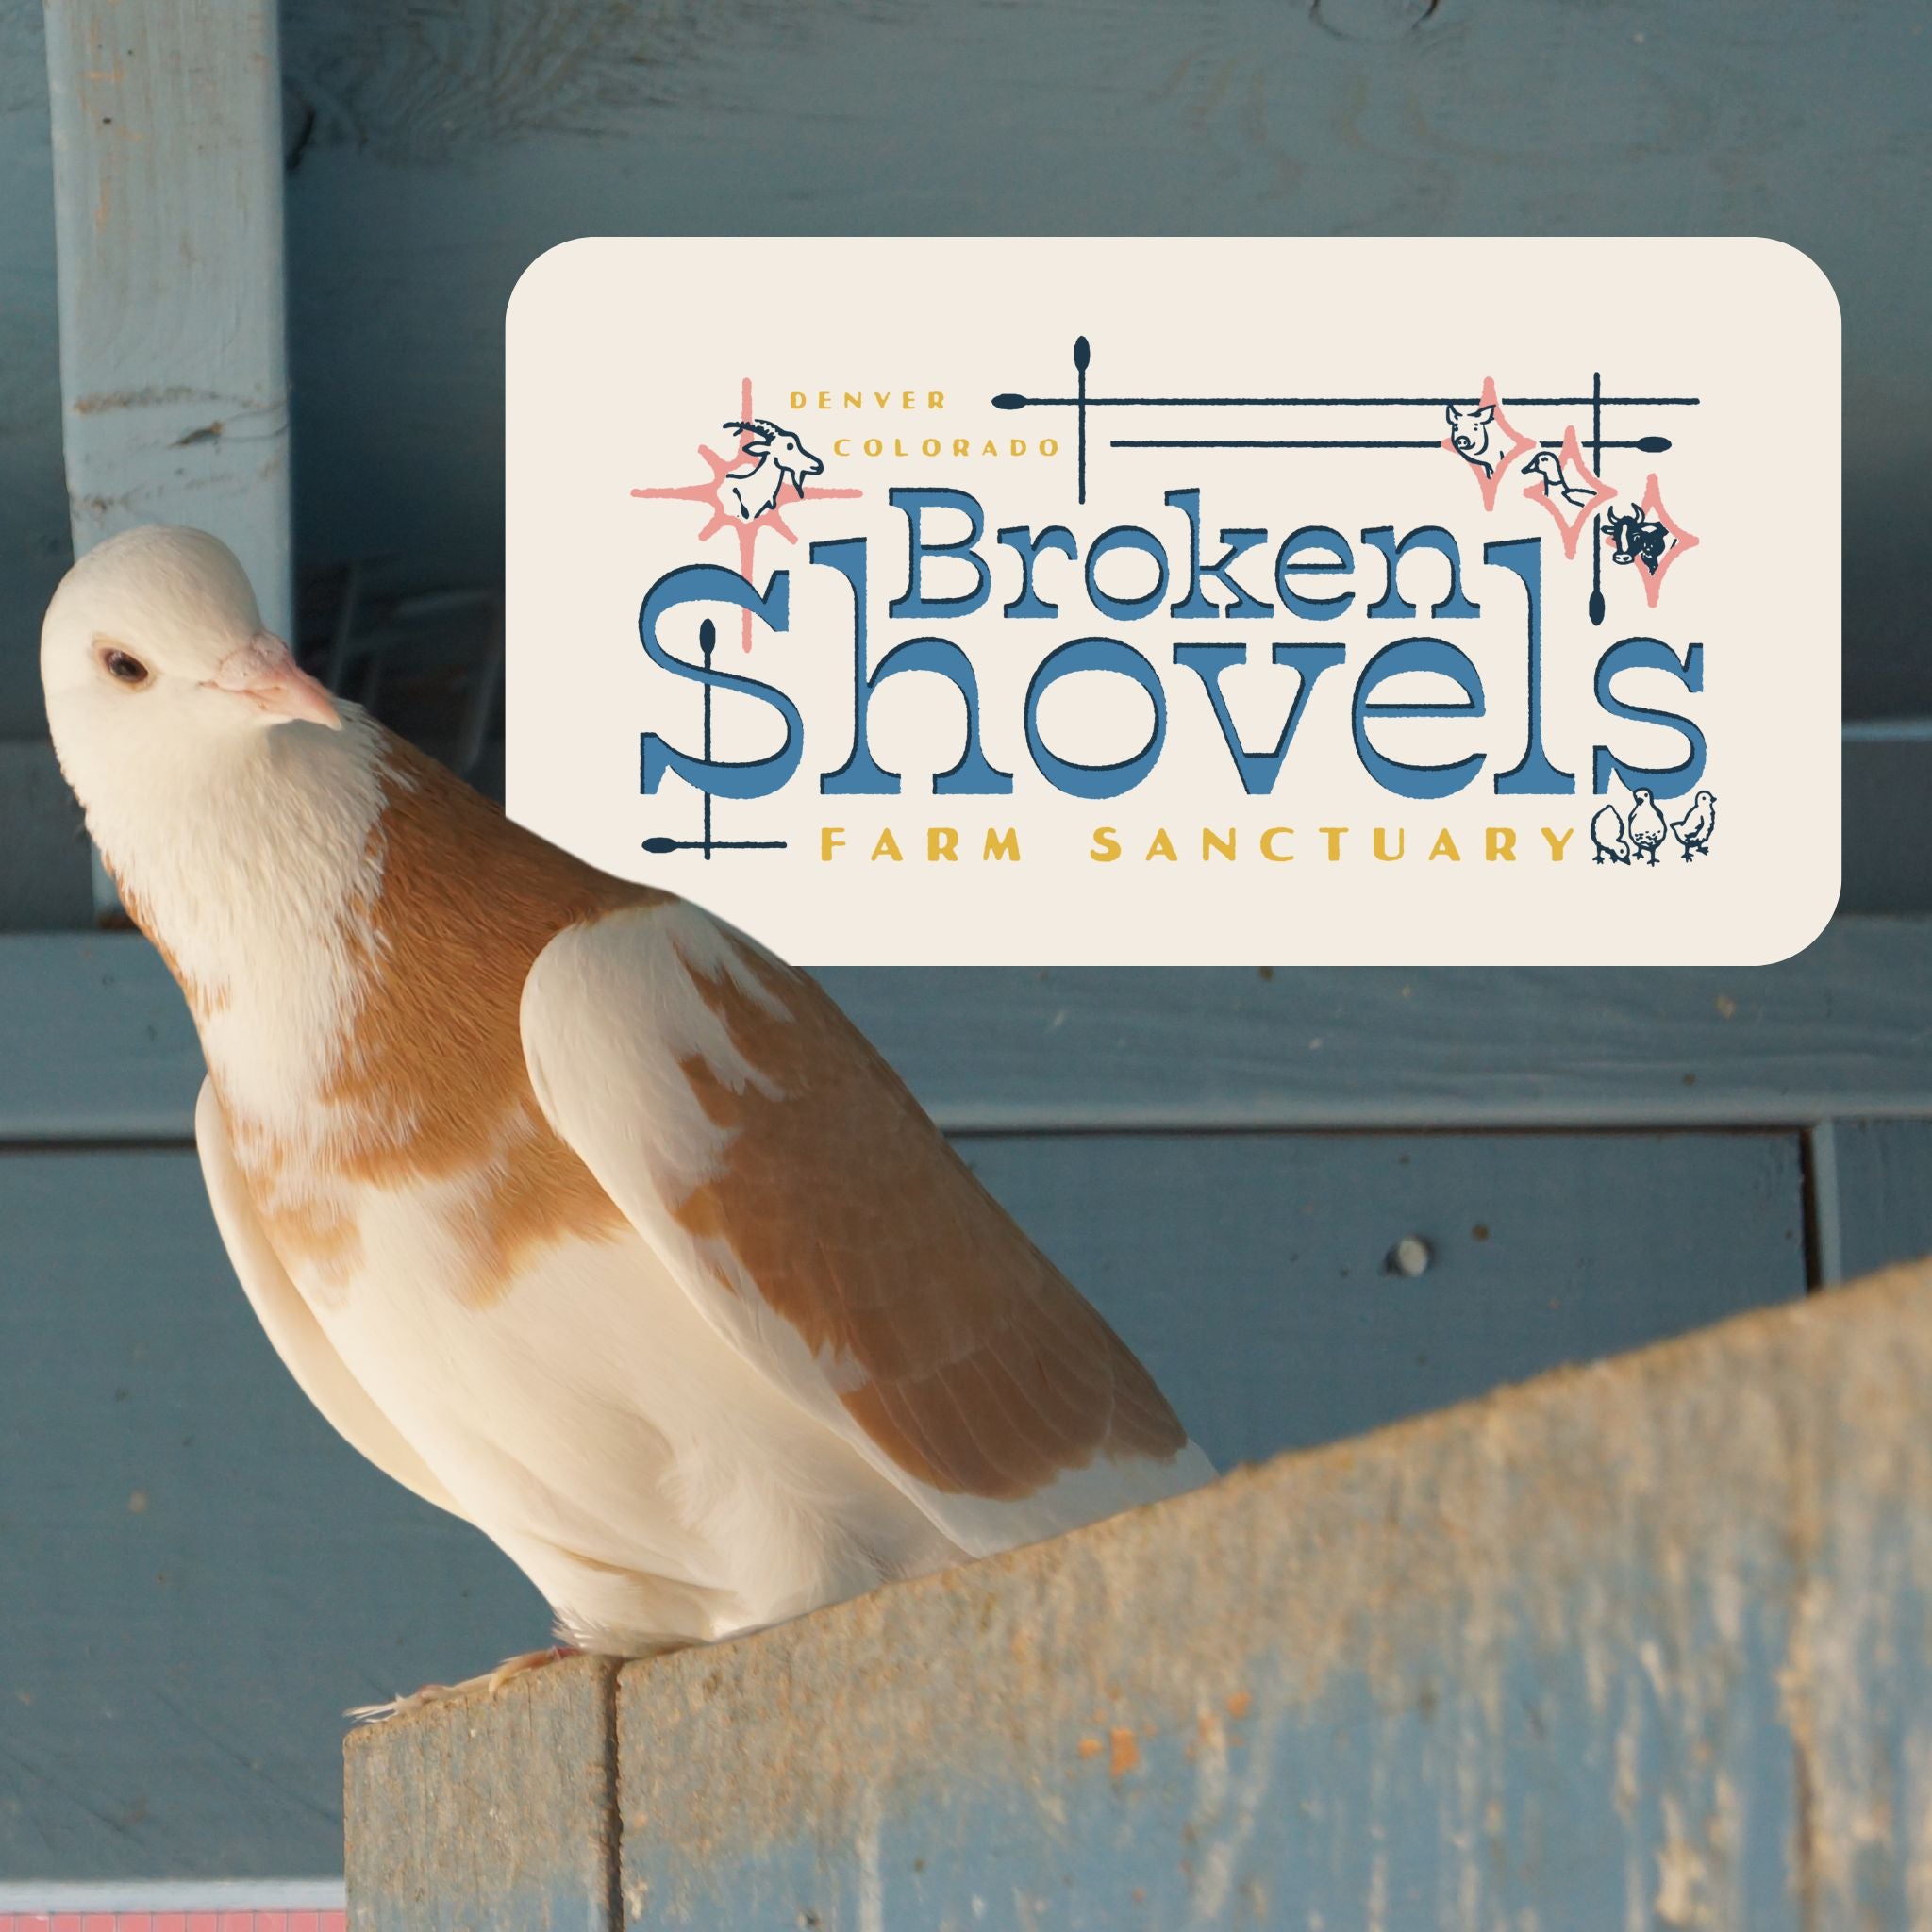 Broken Shovels Fundraiser - Small Animal Hemp Bedding